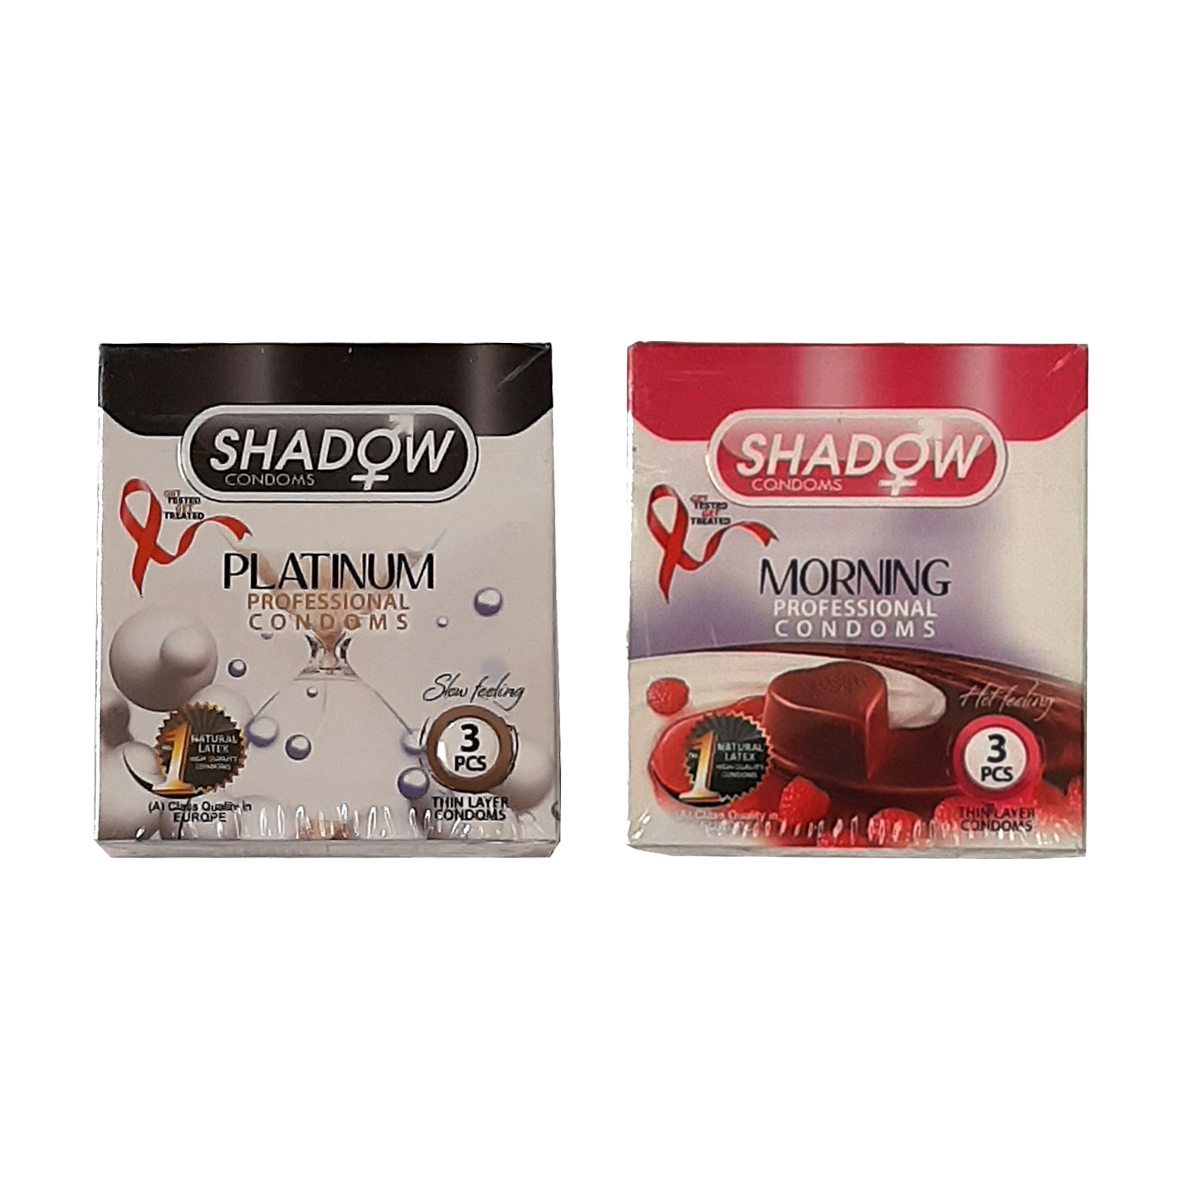 کاندوم شادو مدل platinum بسته 3 عددی به همراه کاندوم مدل morning بسته 3 عددی